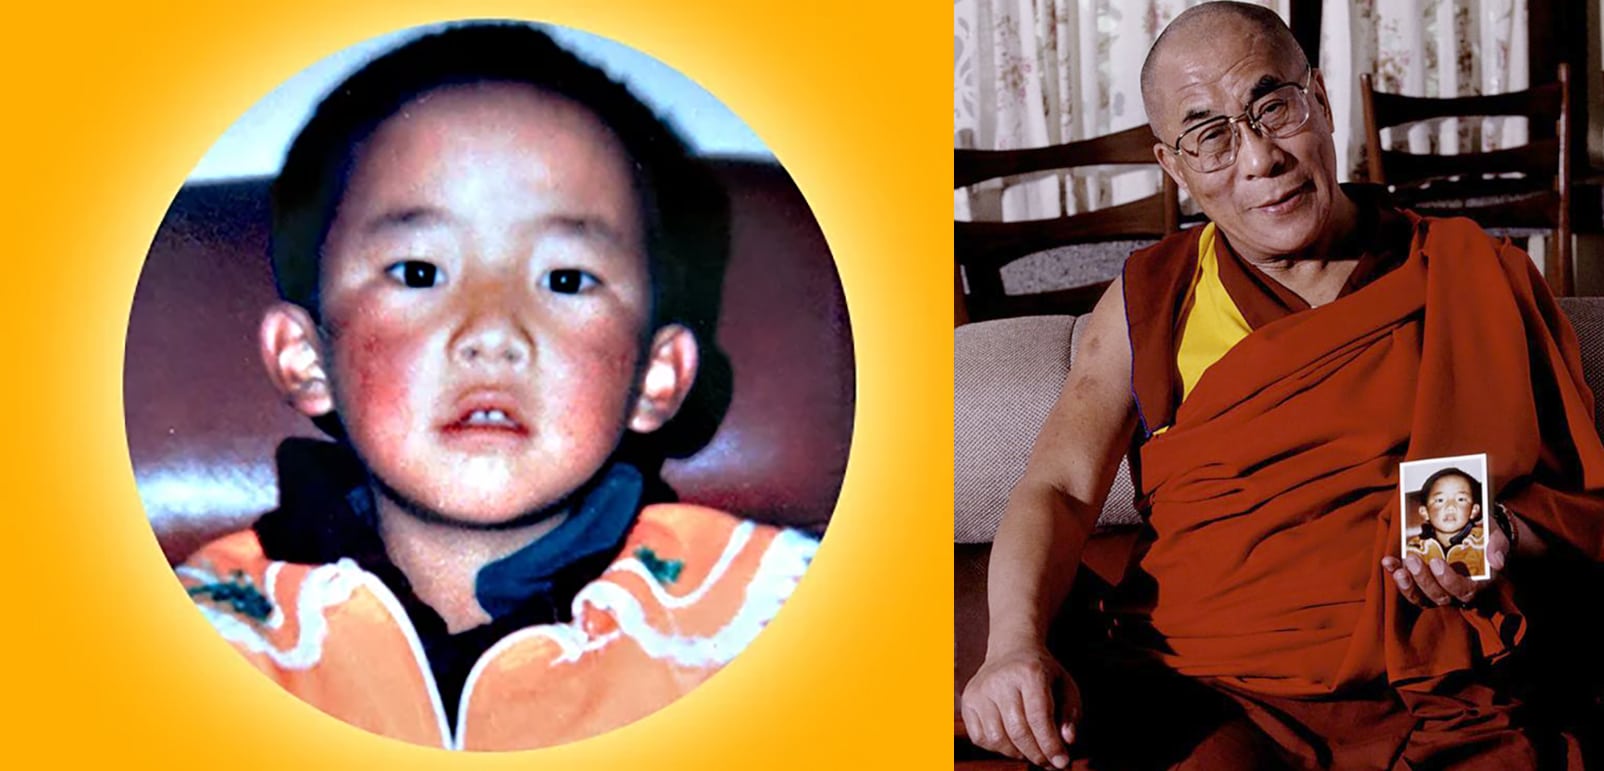 Ventinove anni fa il rapimento dell’undicesimo Panchen Lama